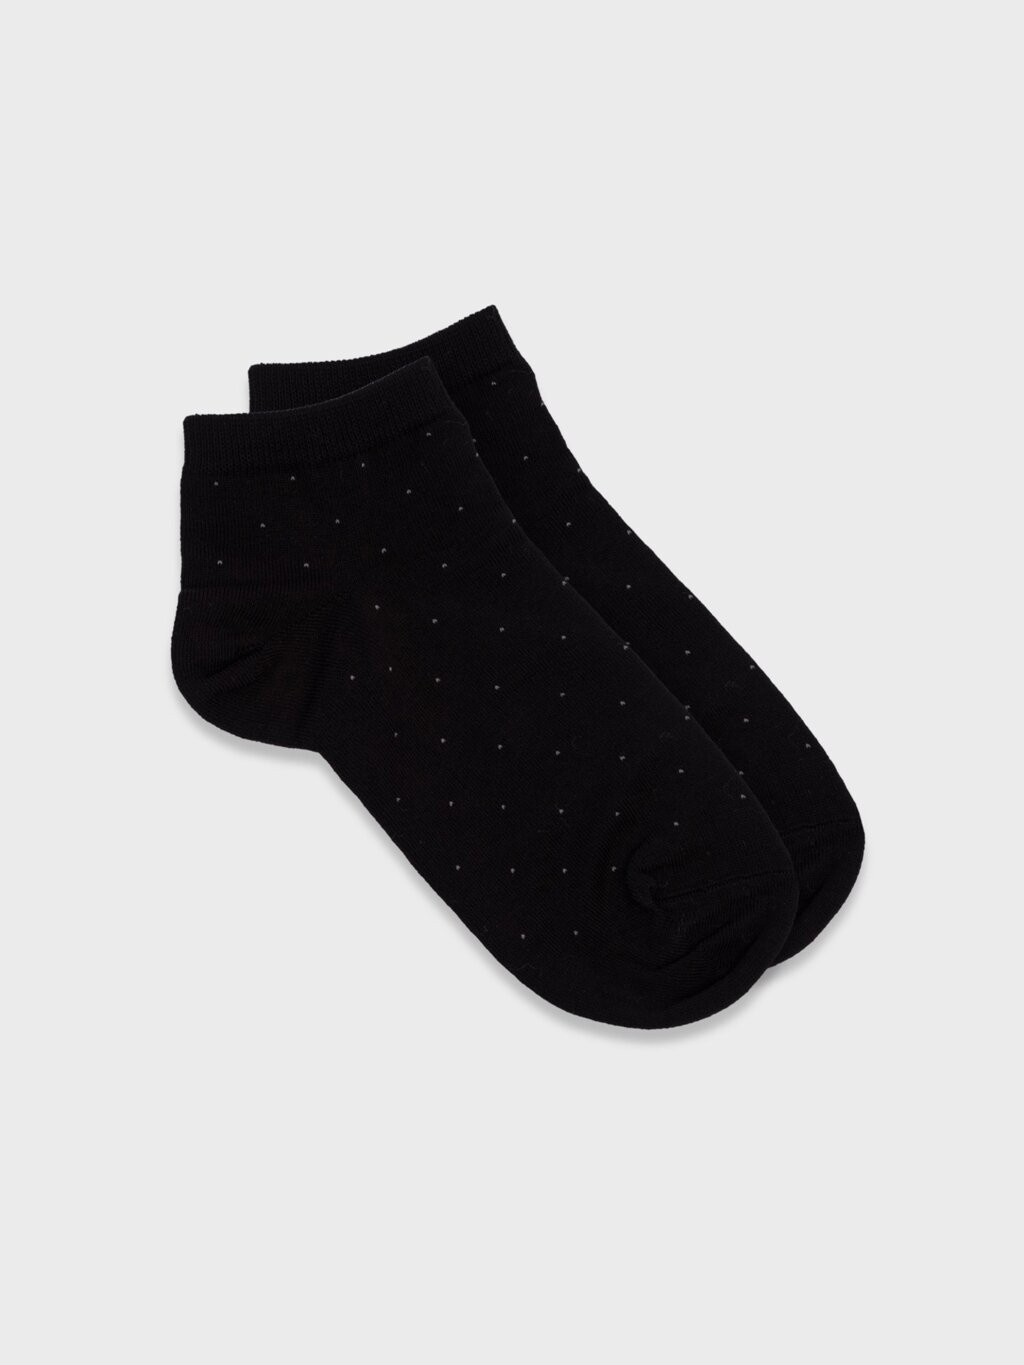 Короткие хлопковые носки (35-37) от компании Admi - фото 1